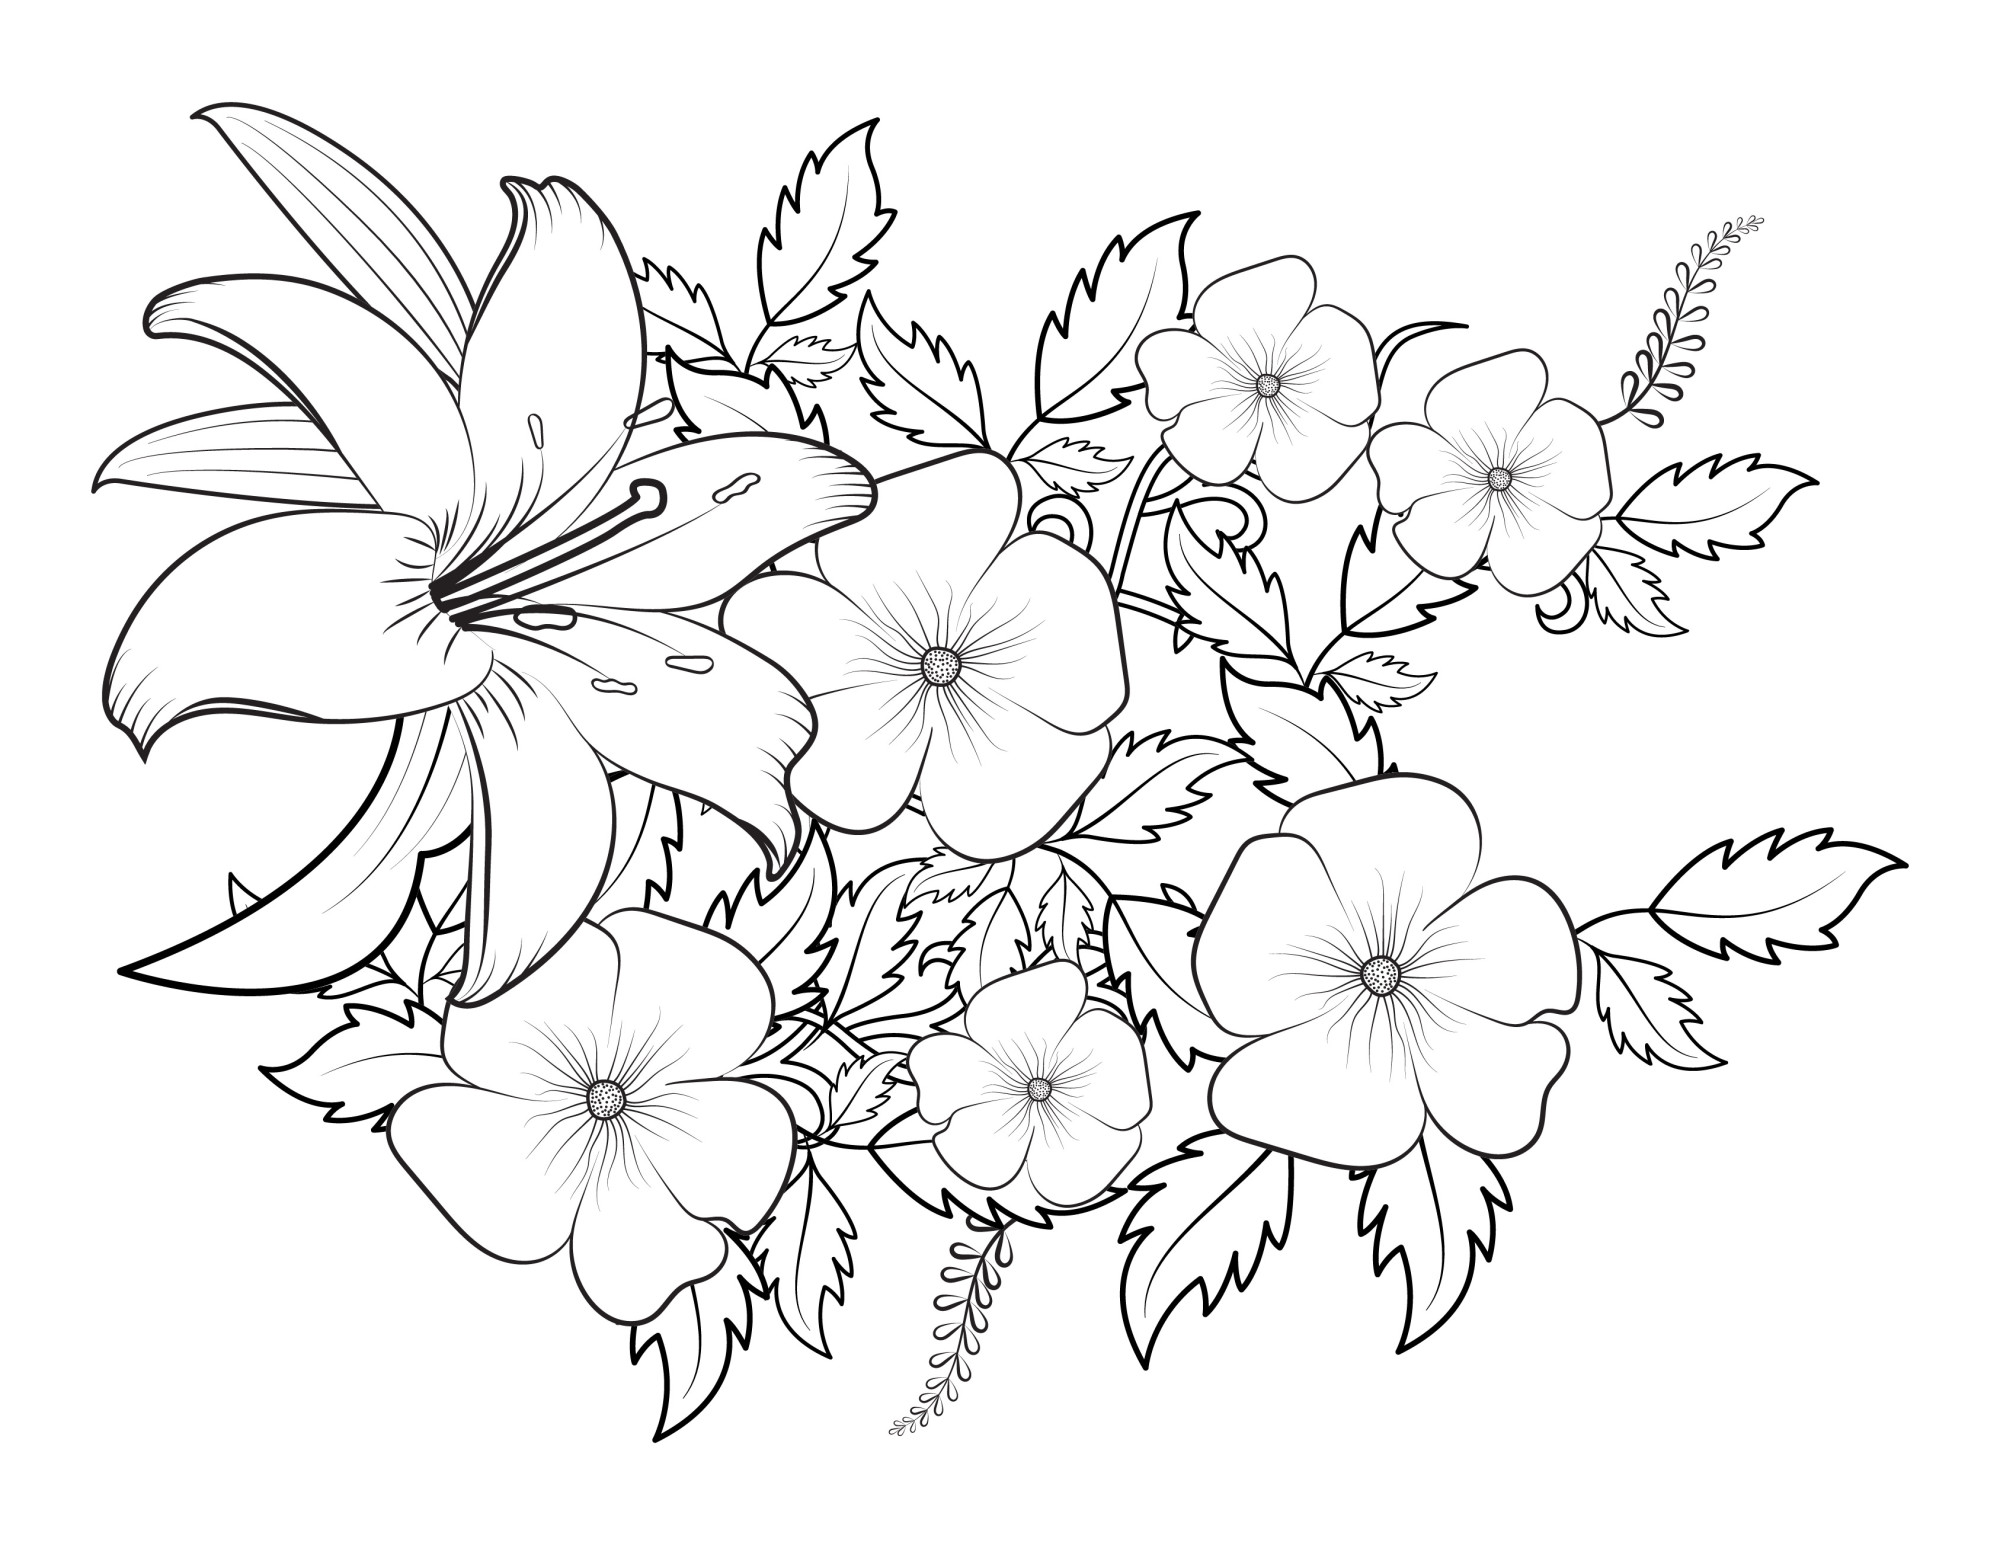 Раскраска для детей: цветы гладиолус и петуния